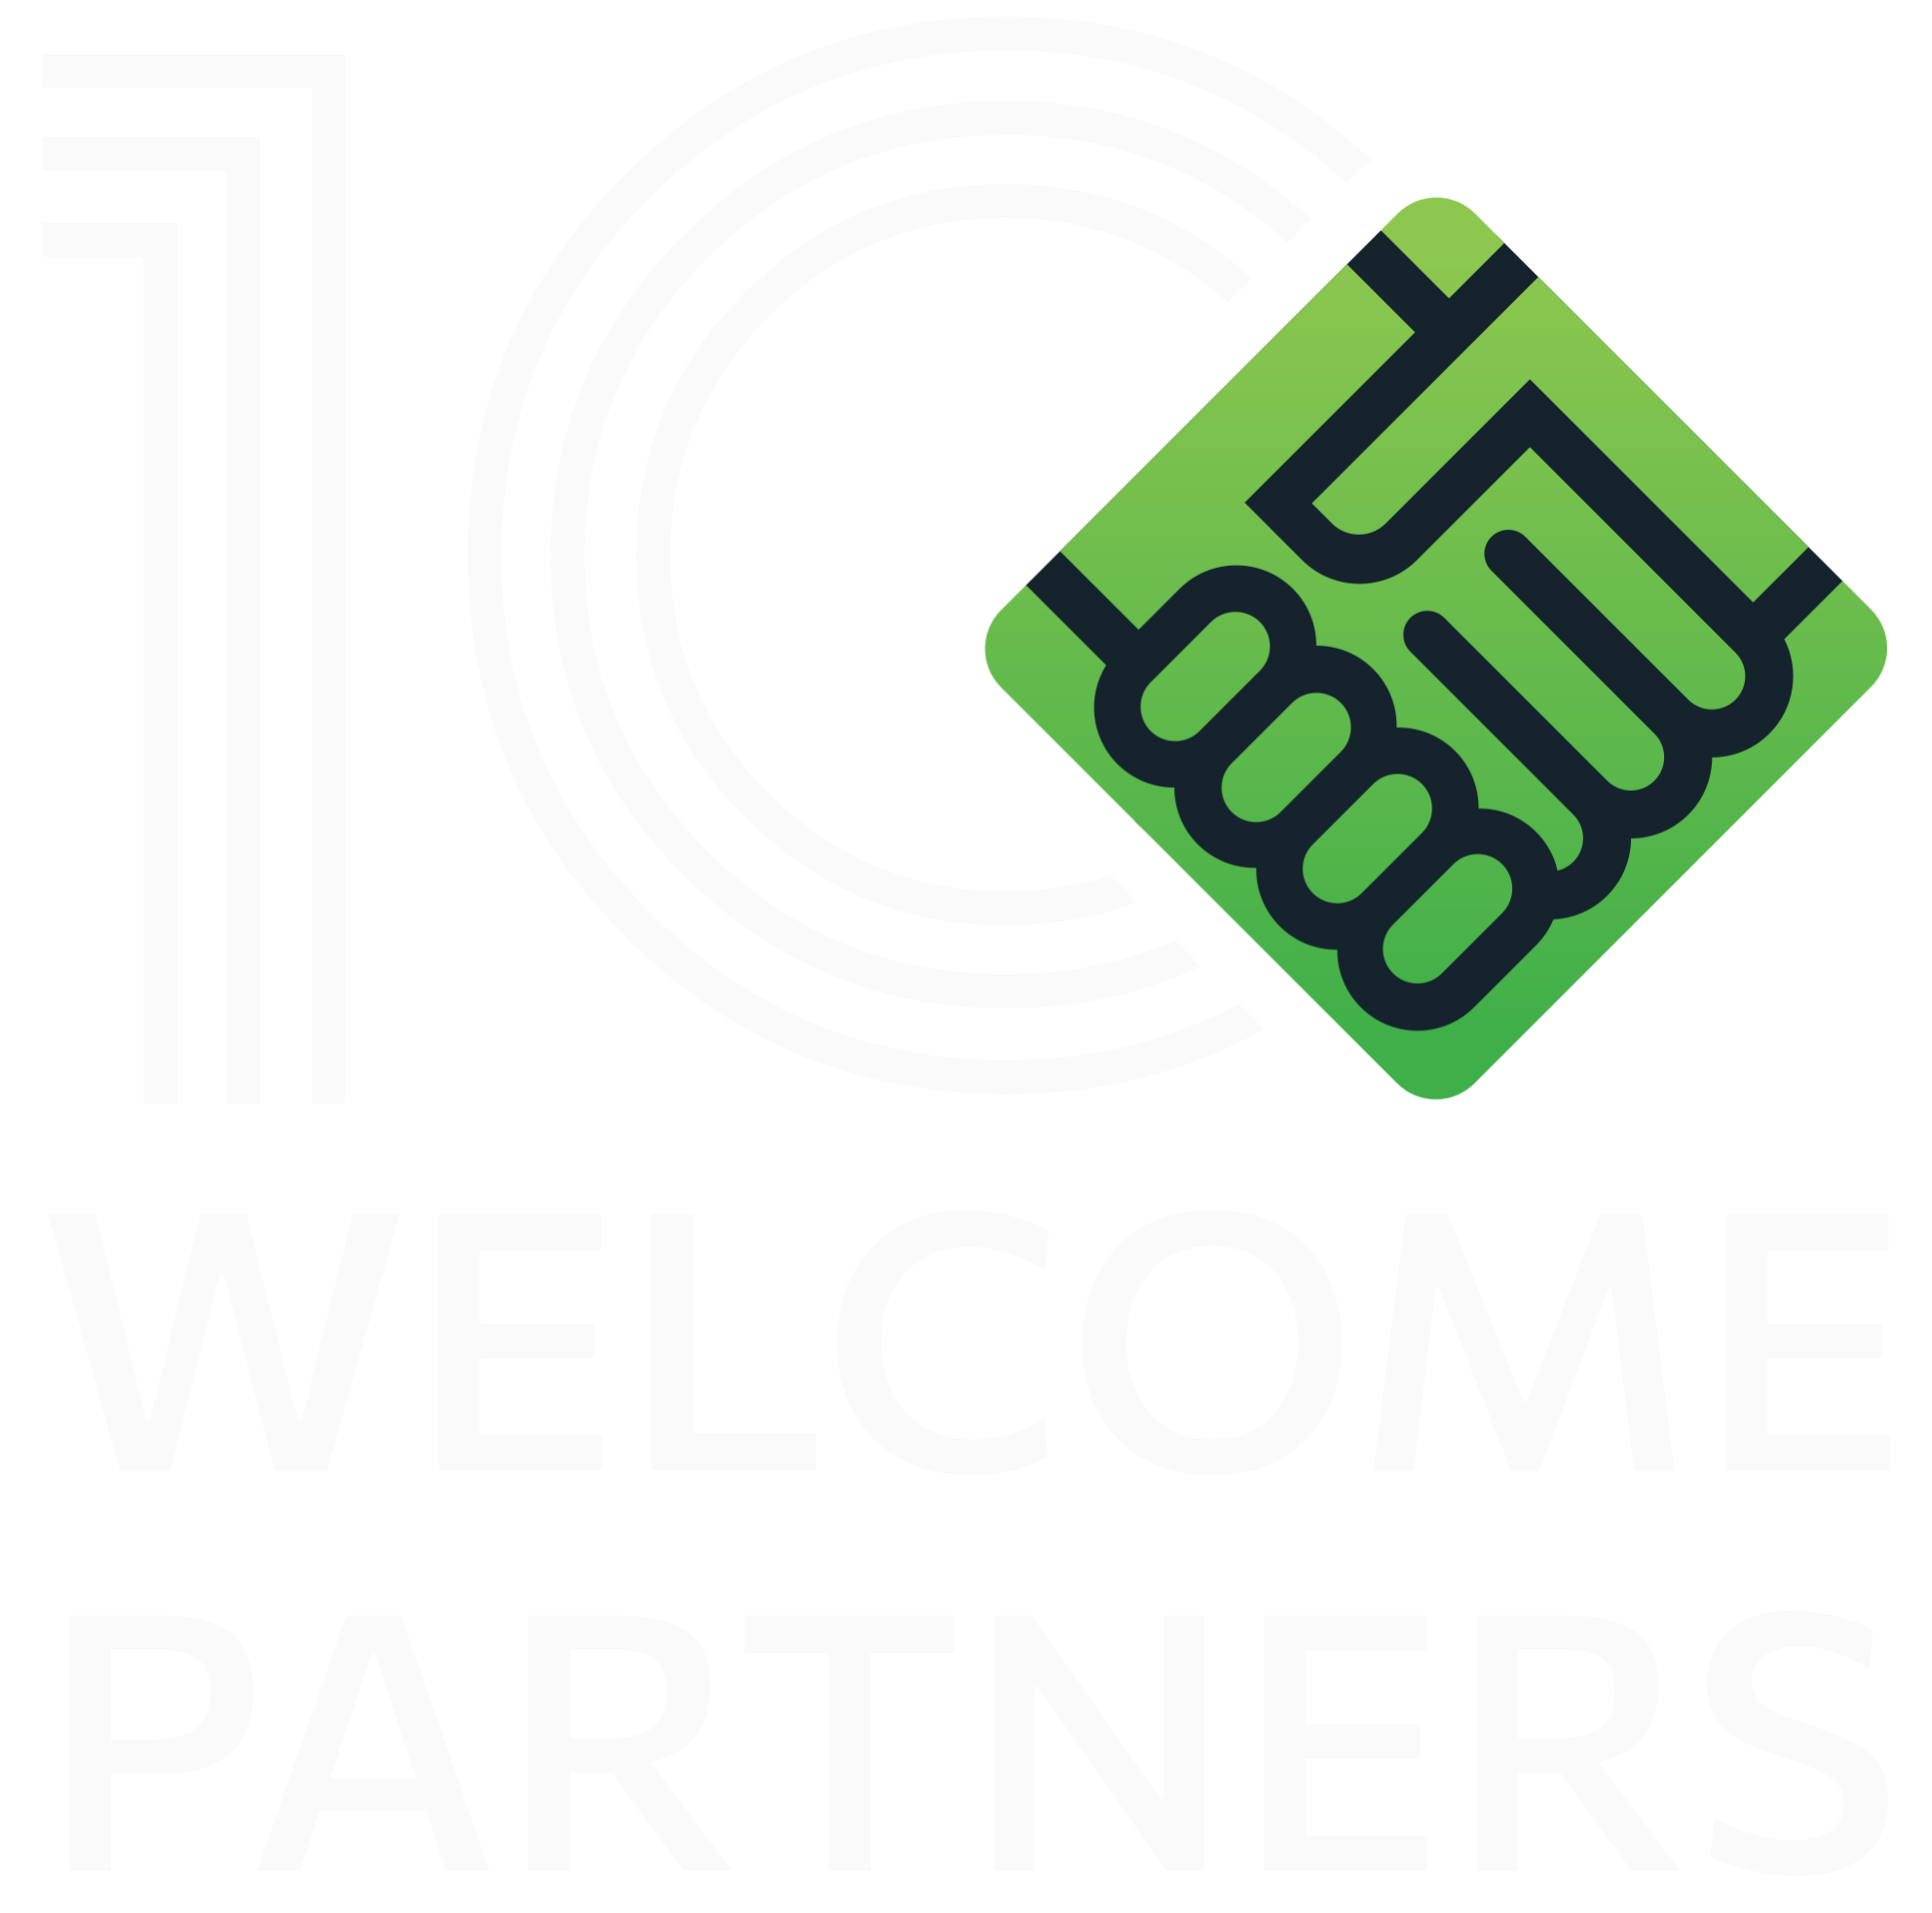 WelcomePartners - Company logo